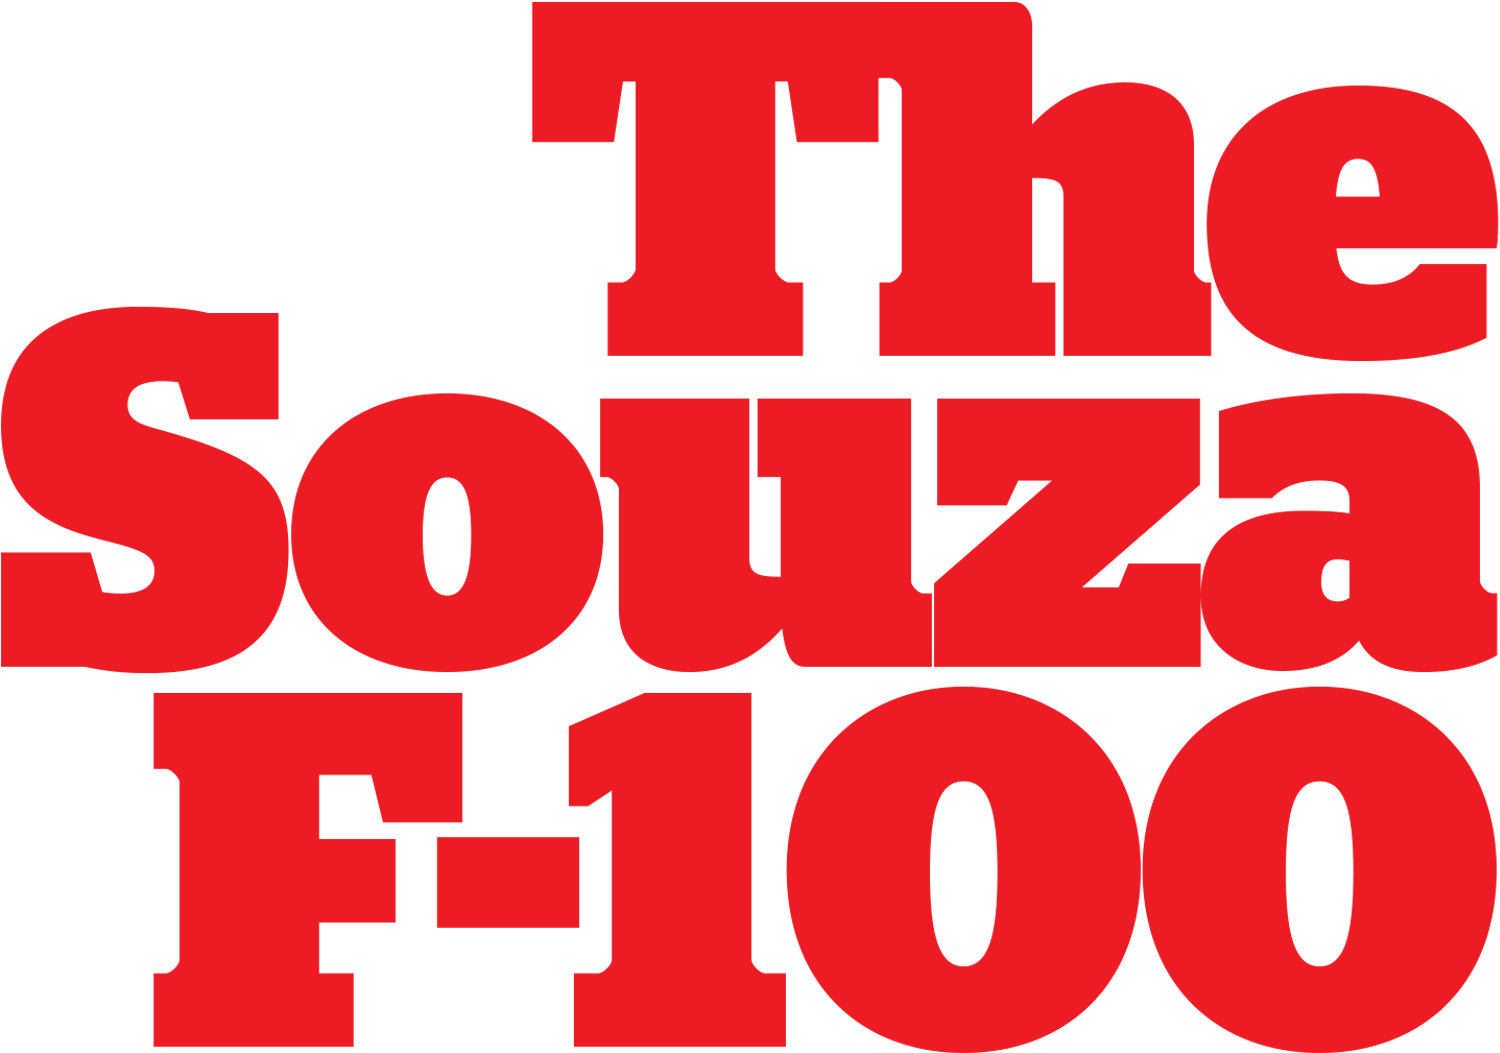 The Souza F-100 typography